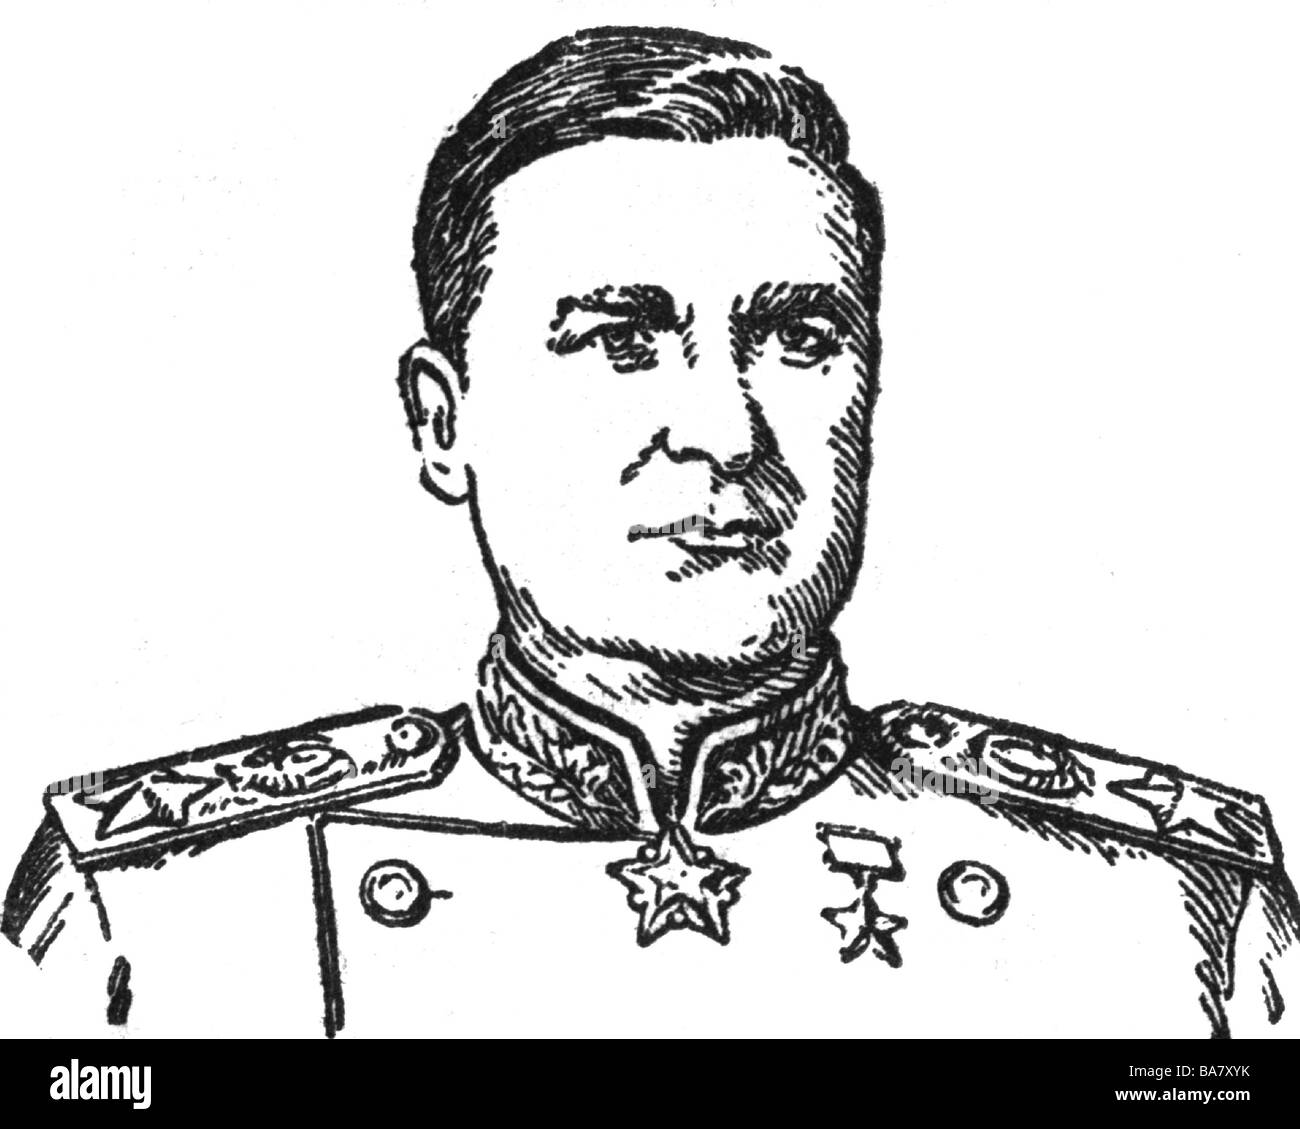 Sokolovsky, Wassily Danilovich, 21.7.1897 - 10.5.1968, Sowjetrussgeneral, Marschall der Sowjetunion, Porträt, Zeichnung, 1950er Jahre, Stockfoto